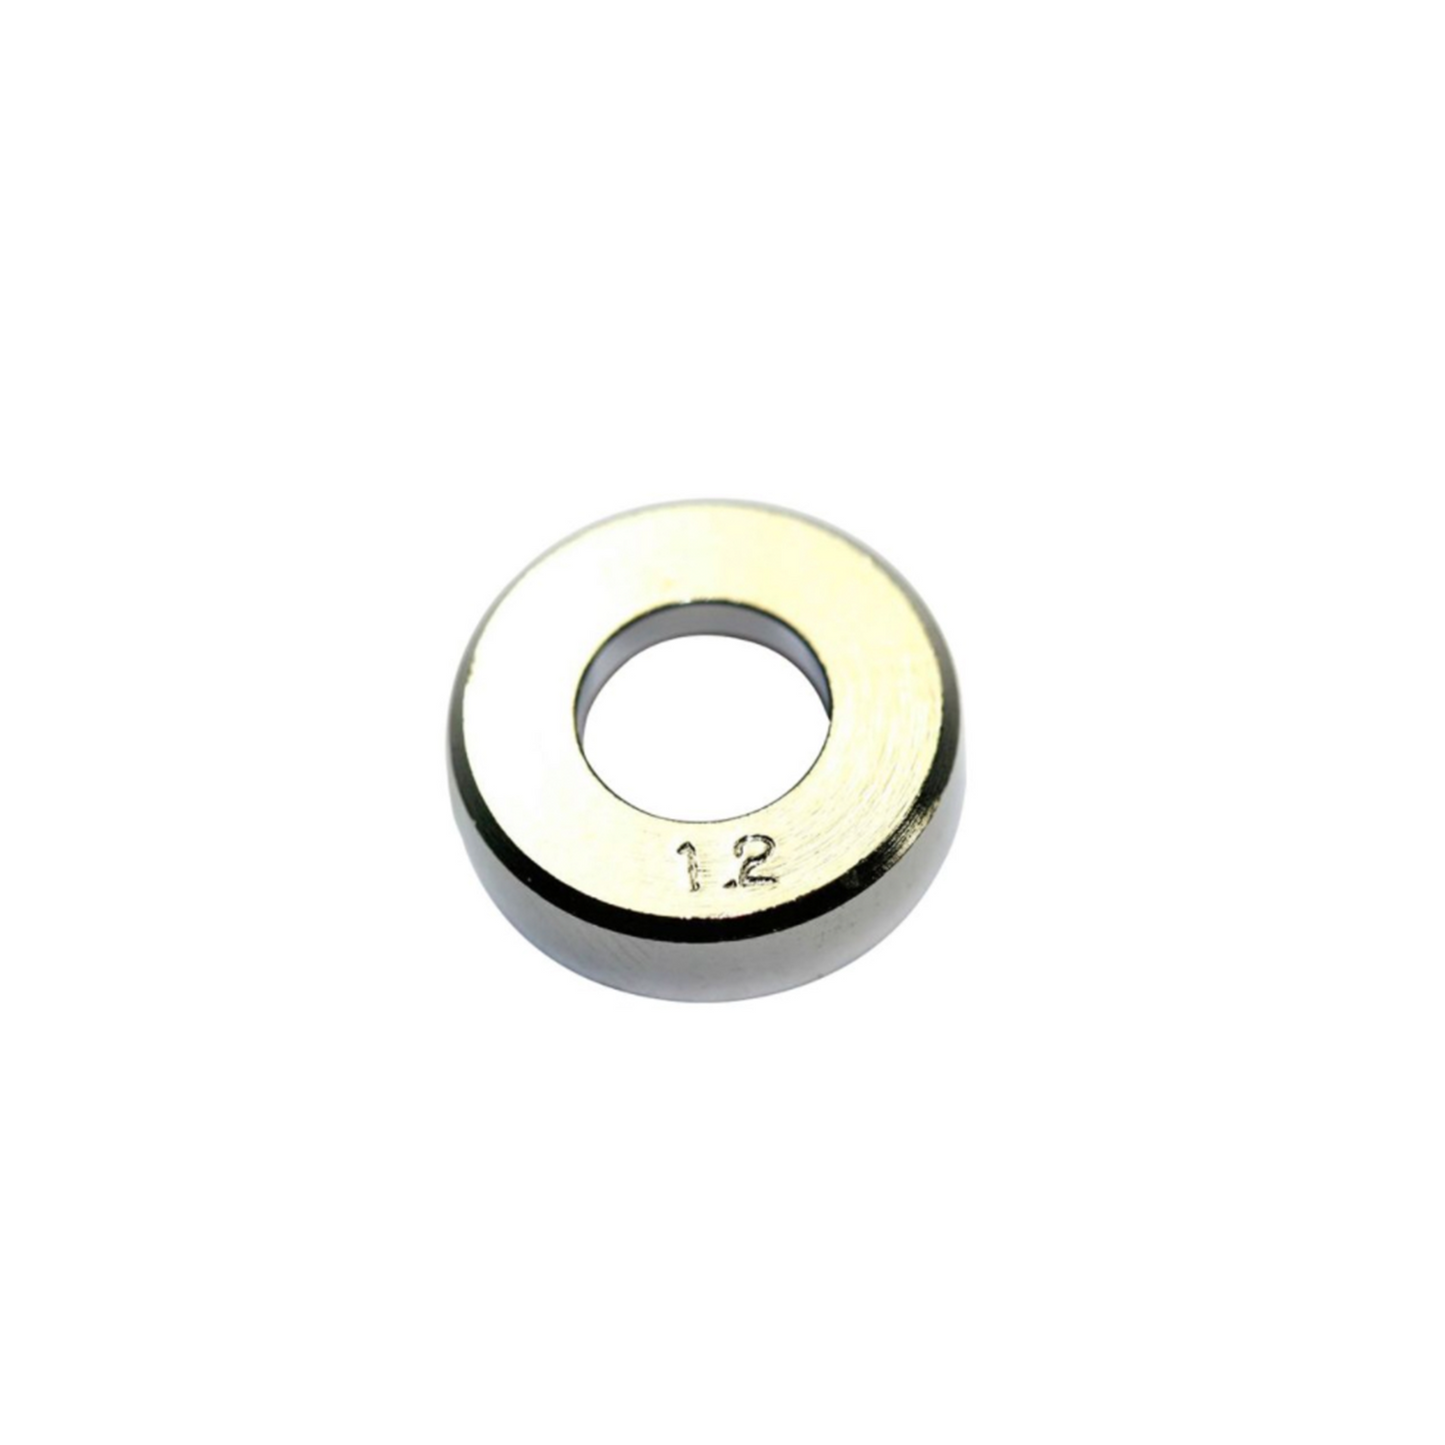 Hakko Products_ B1629 Solder diameter adjustment bracket 1.2MM_ Soldering Accessories_ Hakko Products